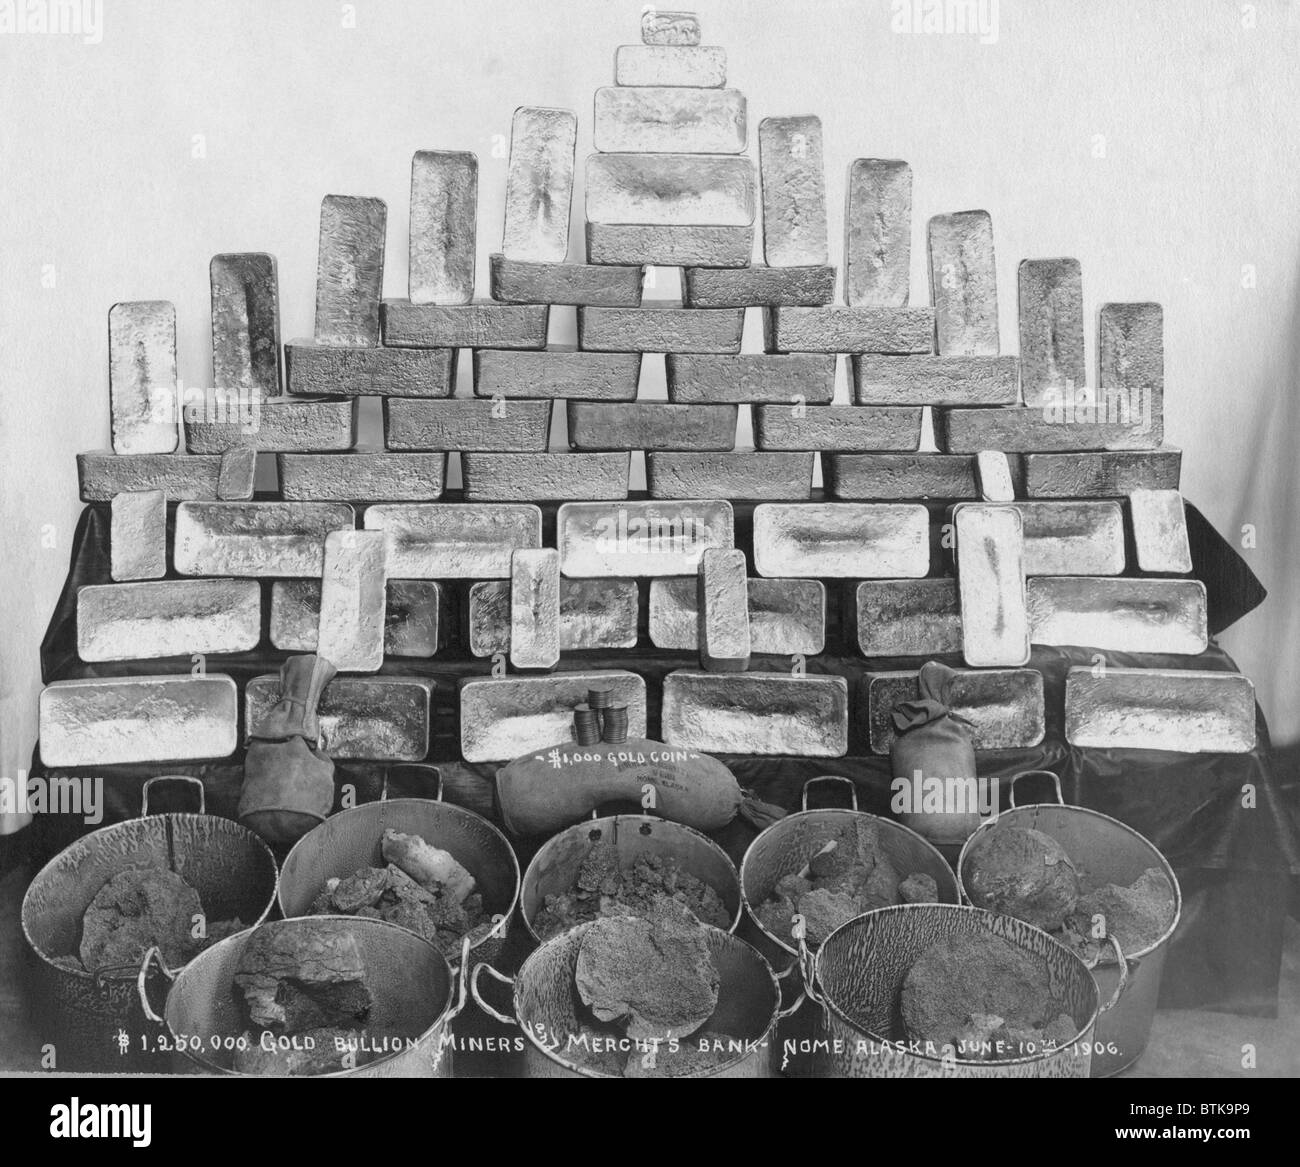 $1.250.000 in physisches gold Miners und Merchants Bank in Nome Alaska, 1906. Der Goldrausch in Alaska erhöht US-Reserven, so dass mehr Geld in die Weltwirtschaft zu zirkulieren. Zur Zeit beobachtet die meisten Handelsnationen der Goldstandard. 1906 Stockfoto